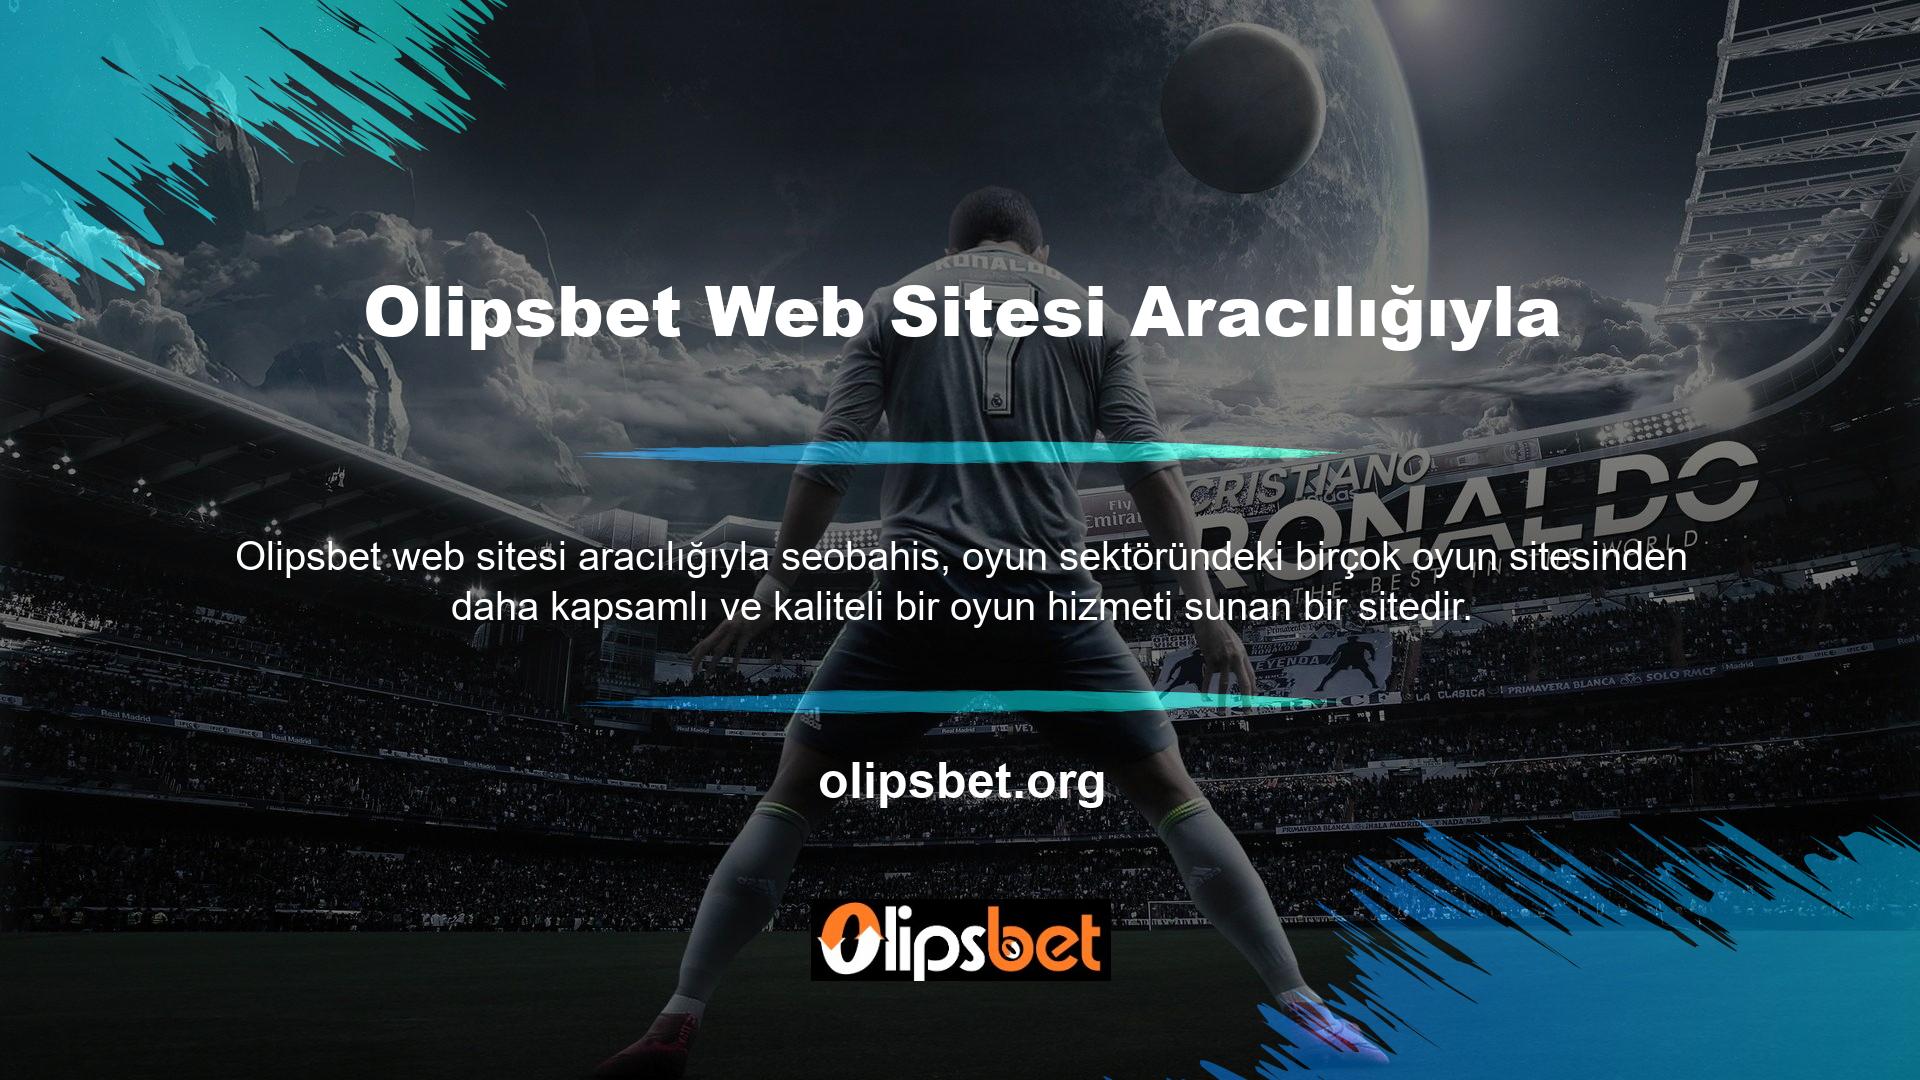 Eski adresinden yeni adresine taşınsanız bile Olipsbet online oyun platformunun keyfini çıkarmaya devam edebilirsiniz